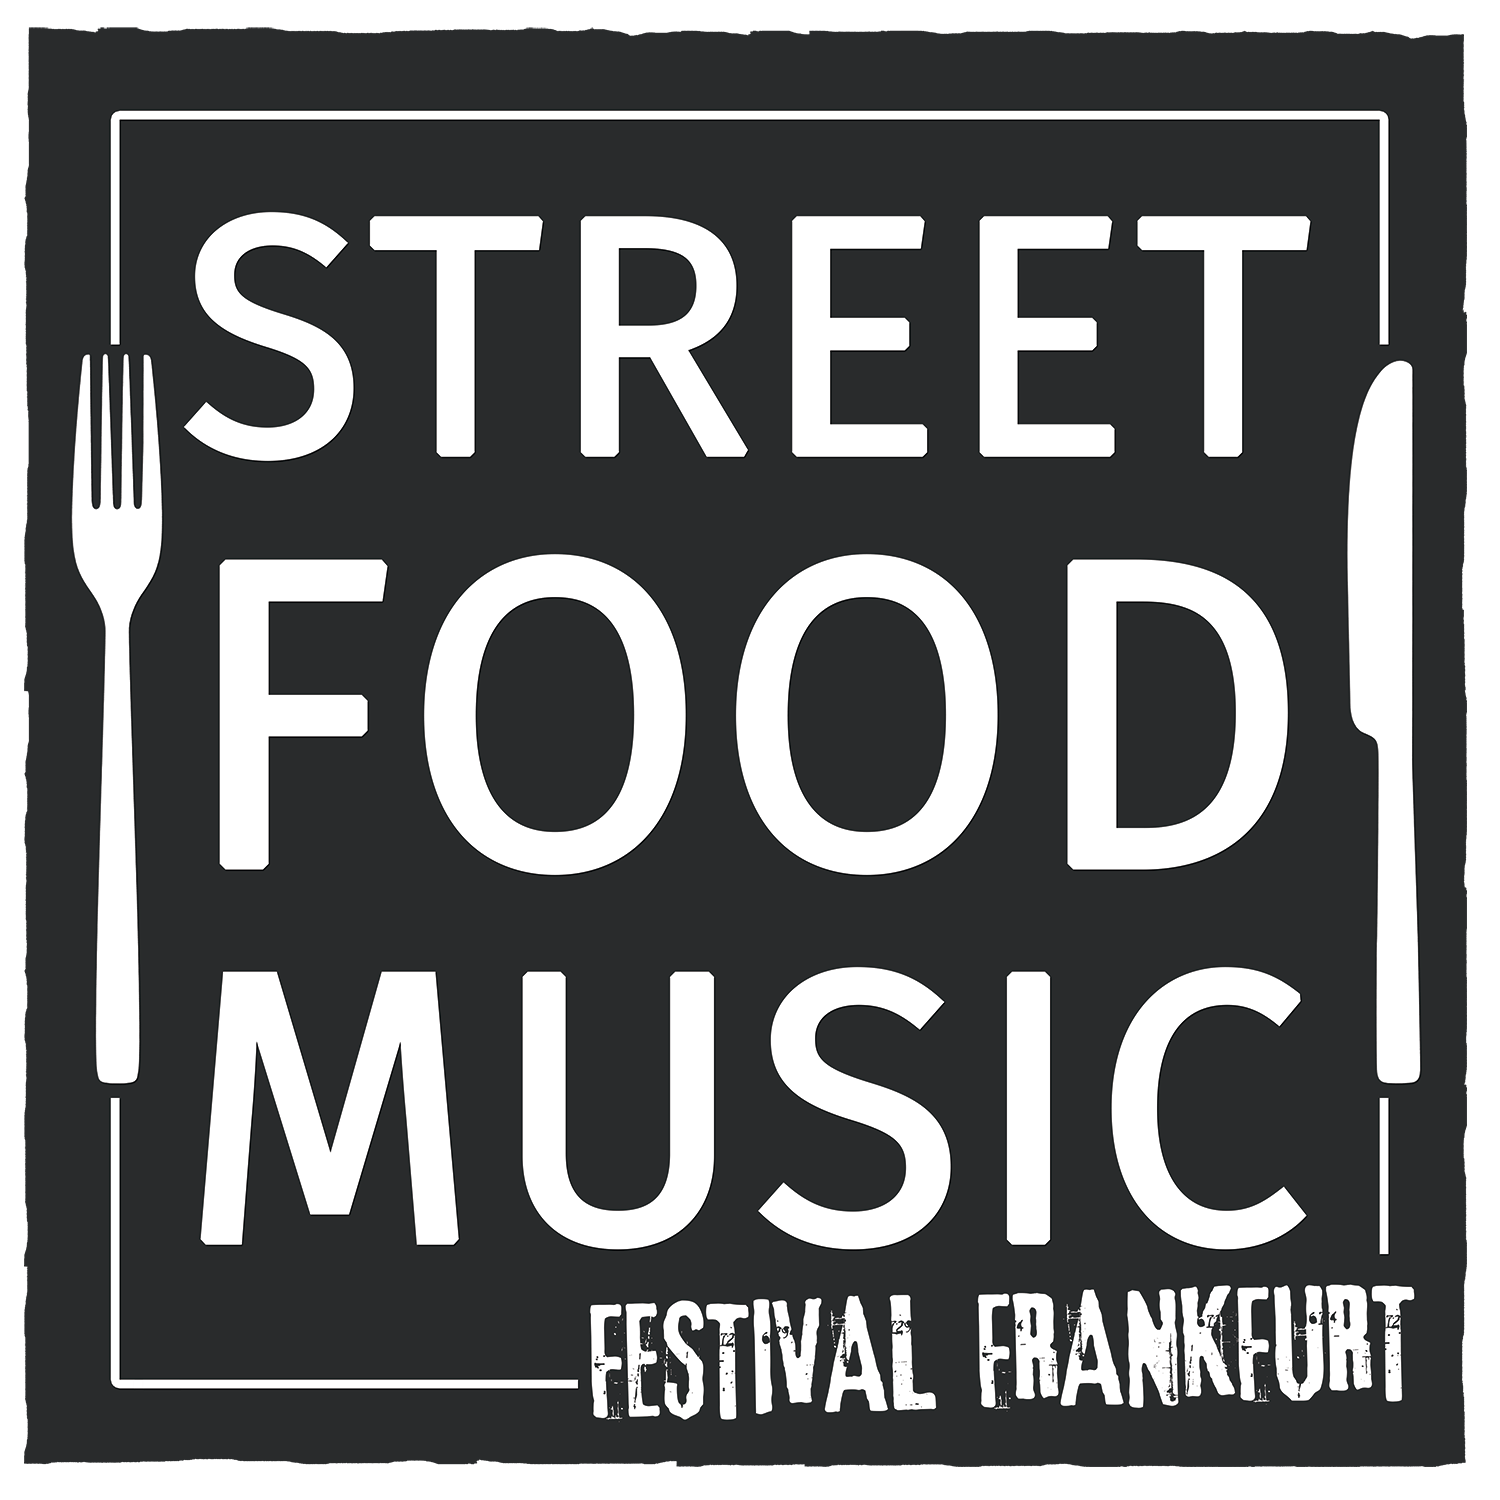 Street Food & Music Festival Frankfurt a. M. 